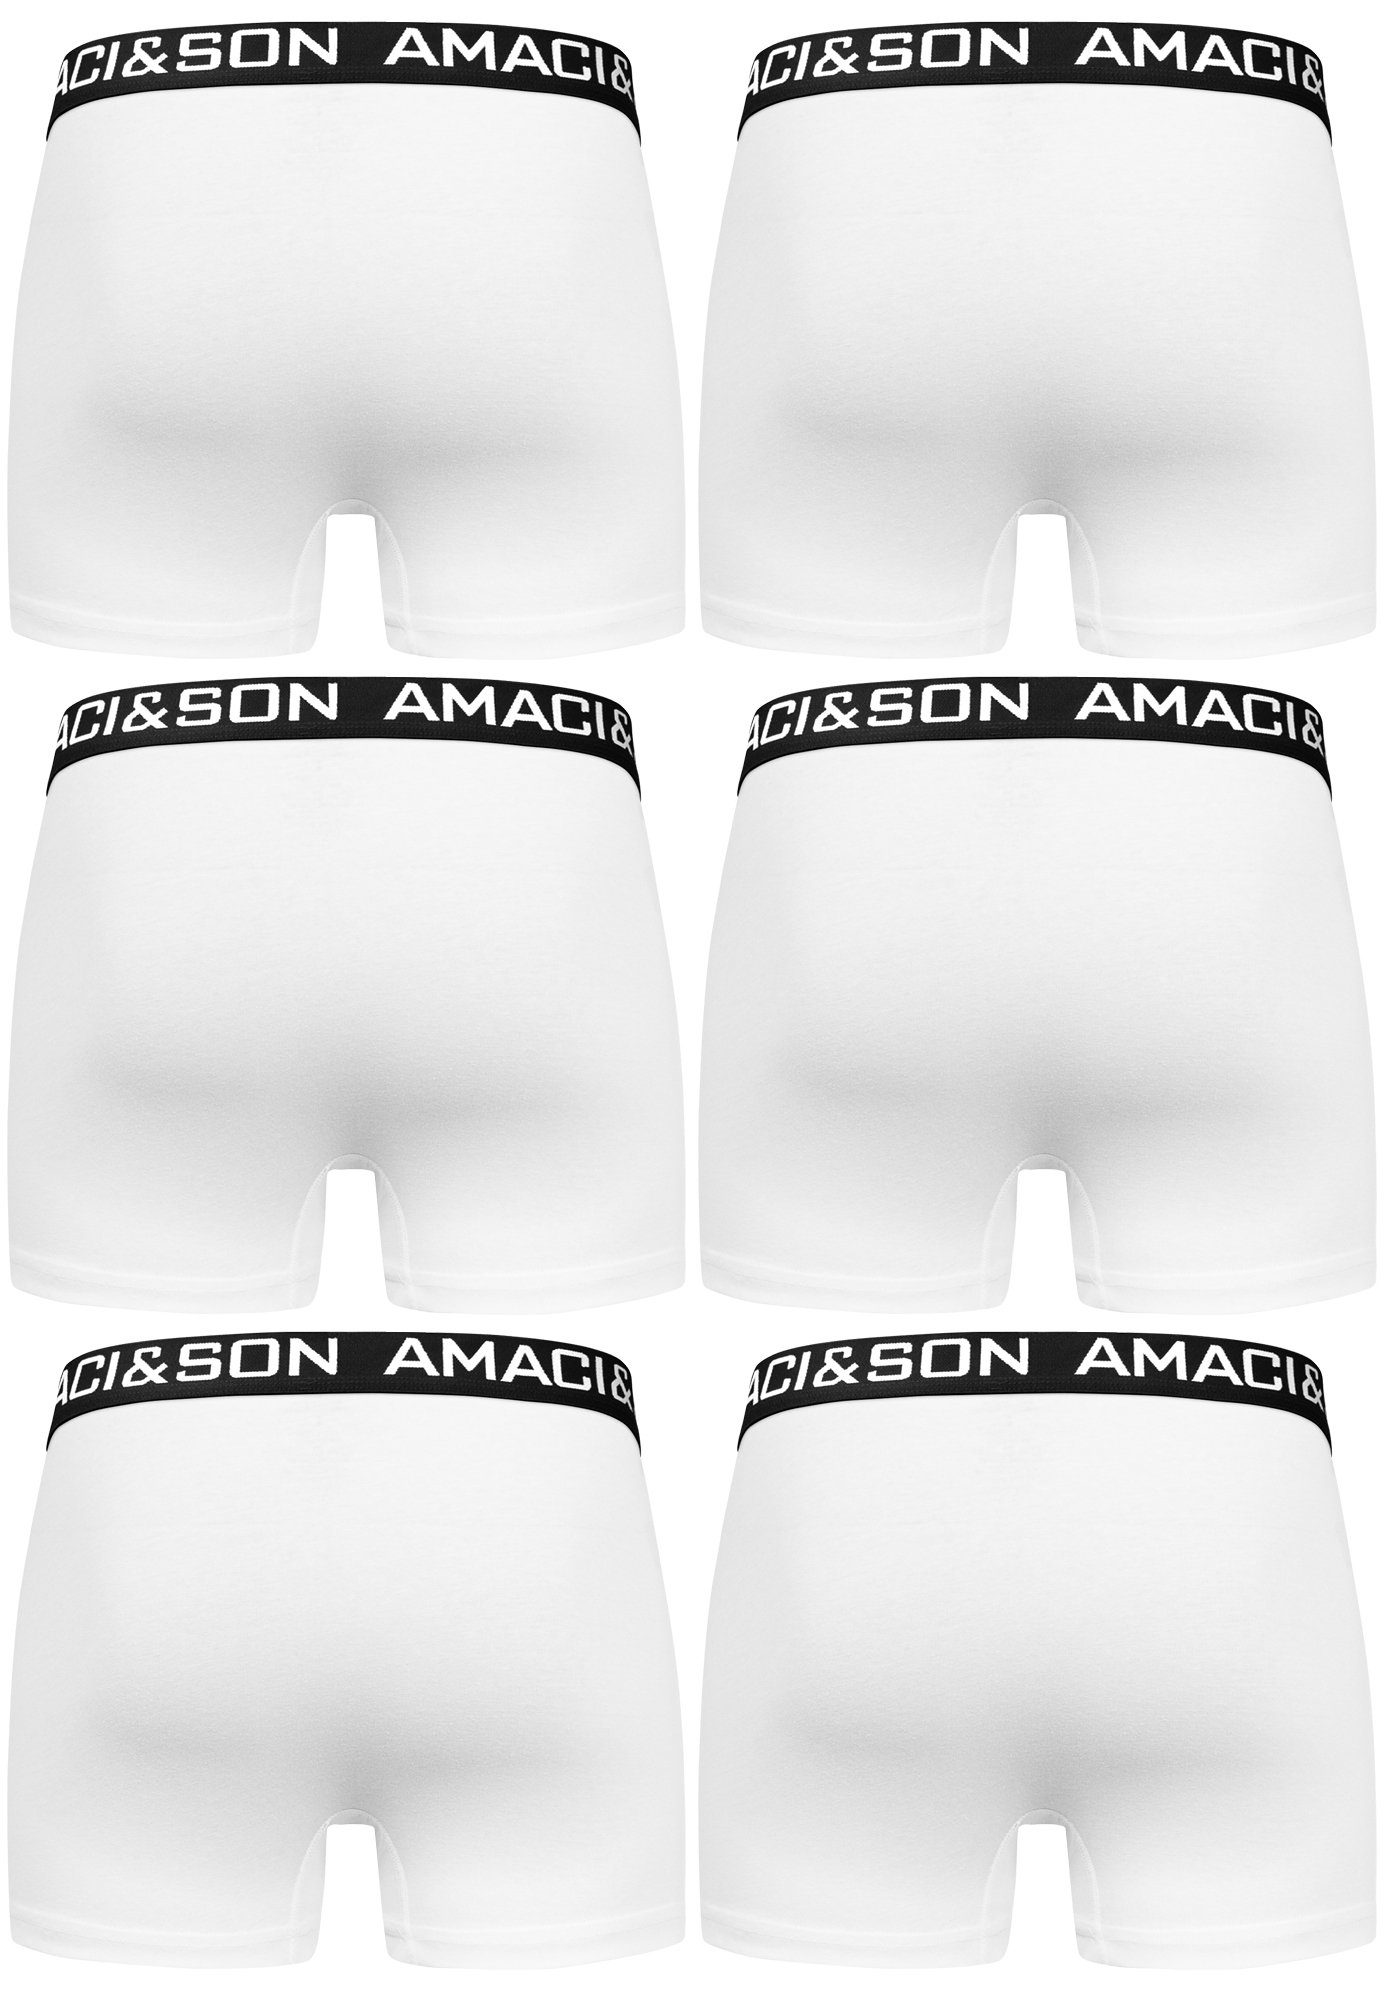 Amaci&Sons Boxershorts WESTON 6er Pack Weiß/Schwarz Unterwäsche (6er-Pack) Unterhose Männer Herren Baumwolle Boxershorts